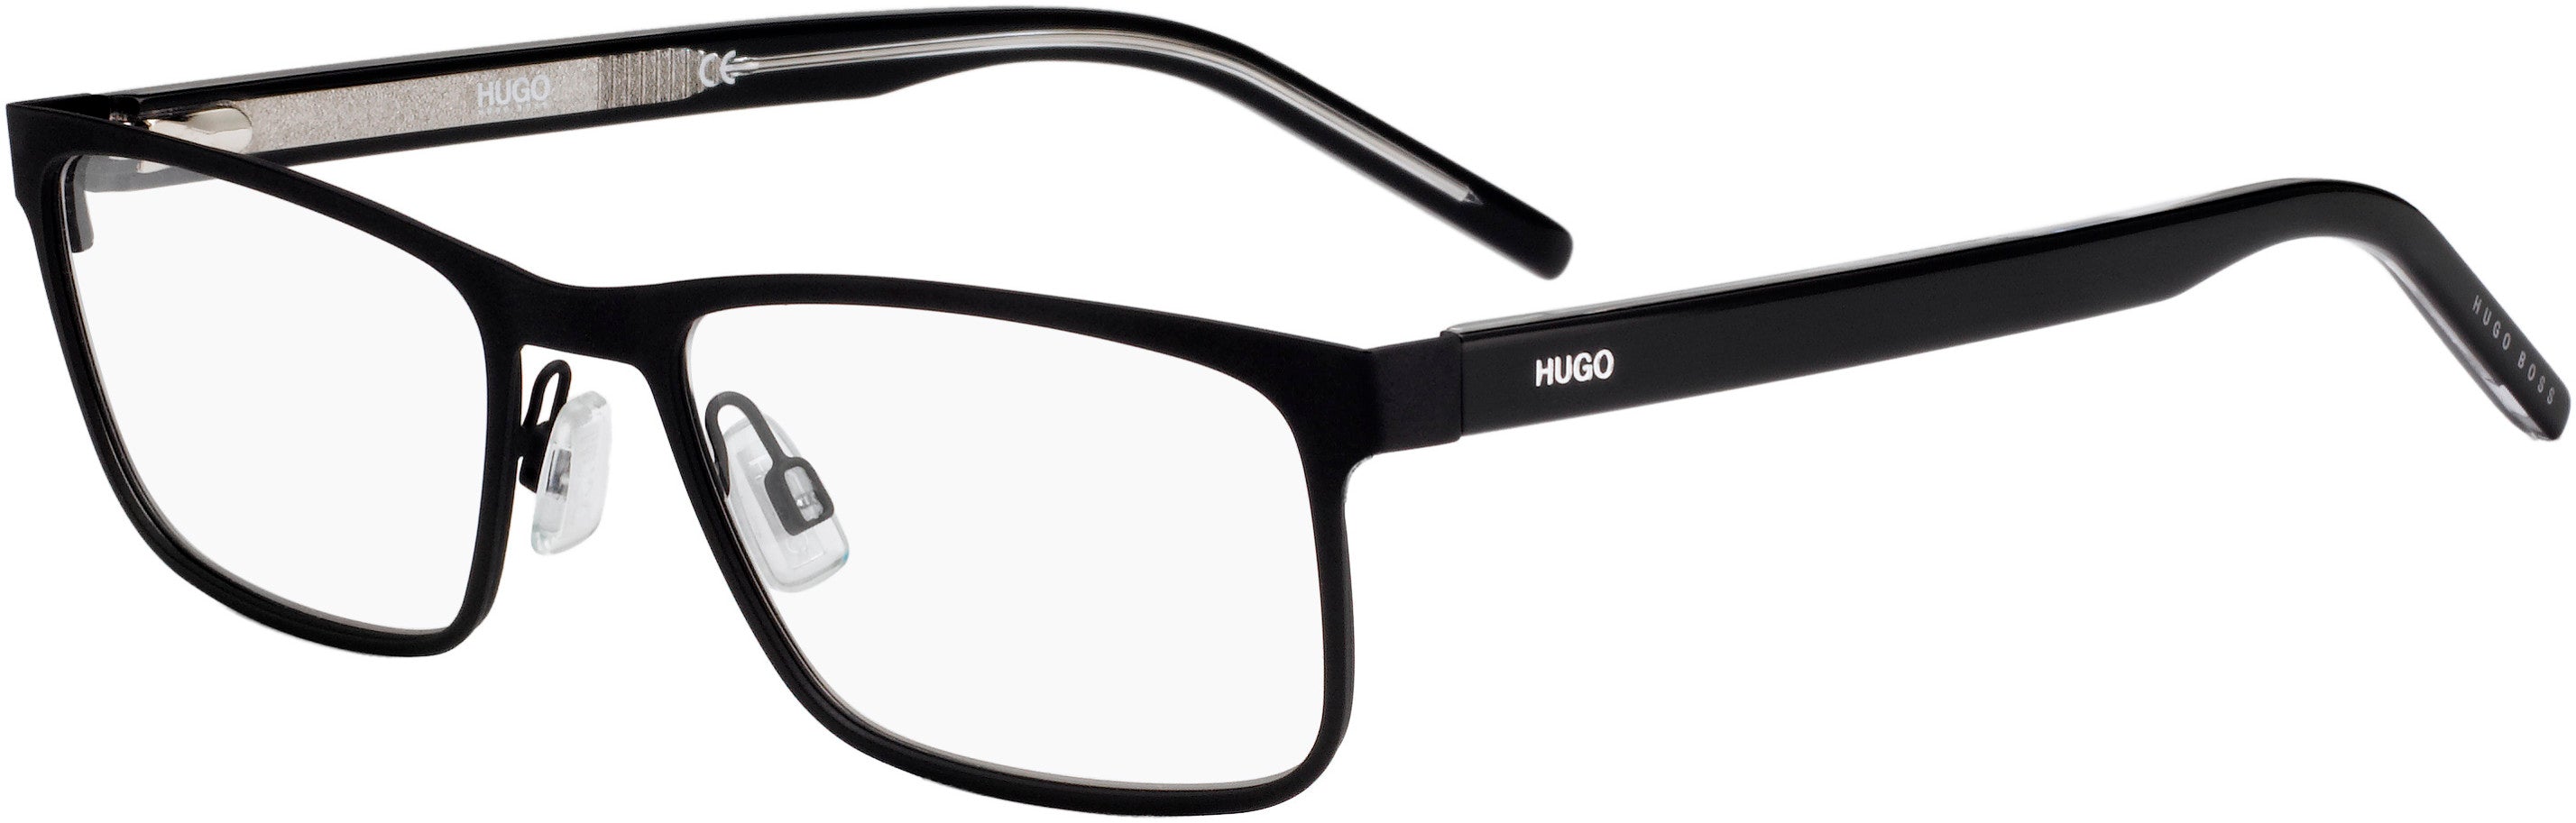 Hugo (hug) Hugo 1005 Rectangular Eyeglasses 0N7I-0N7I  Matte Black Bkcr (00 Demo Lens)